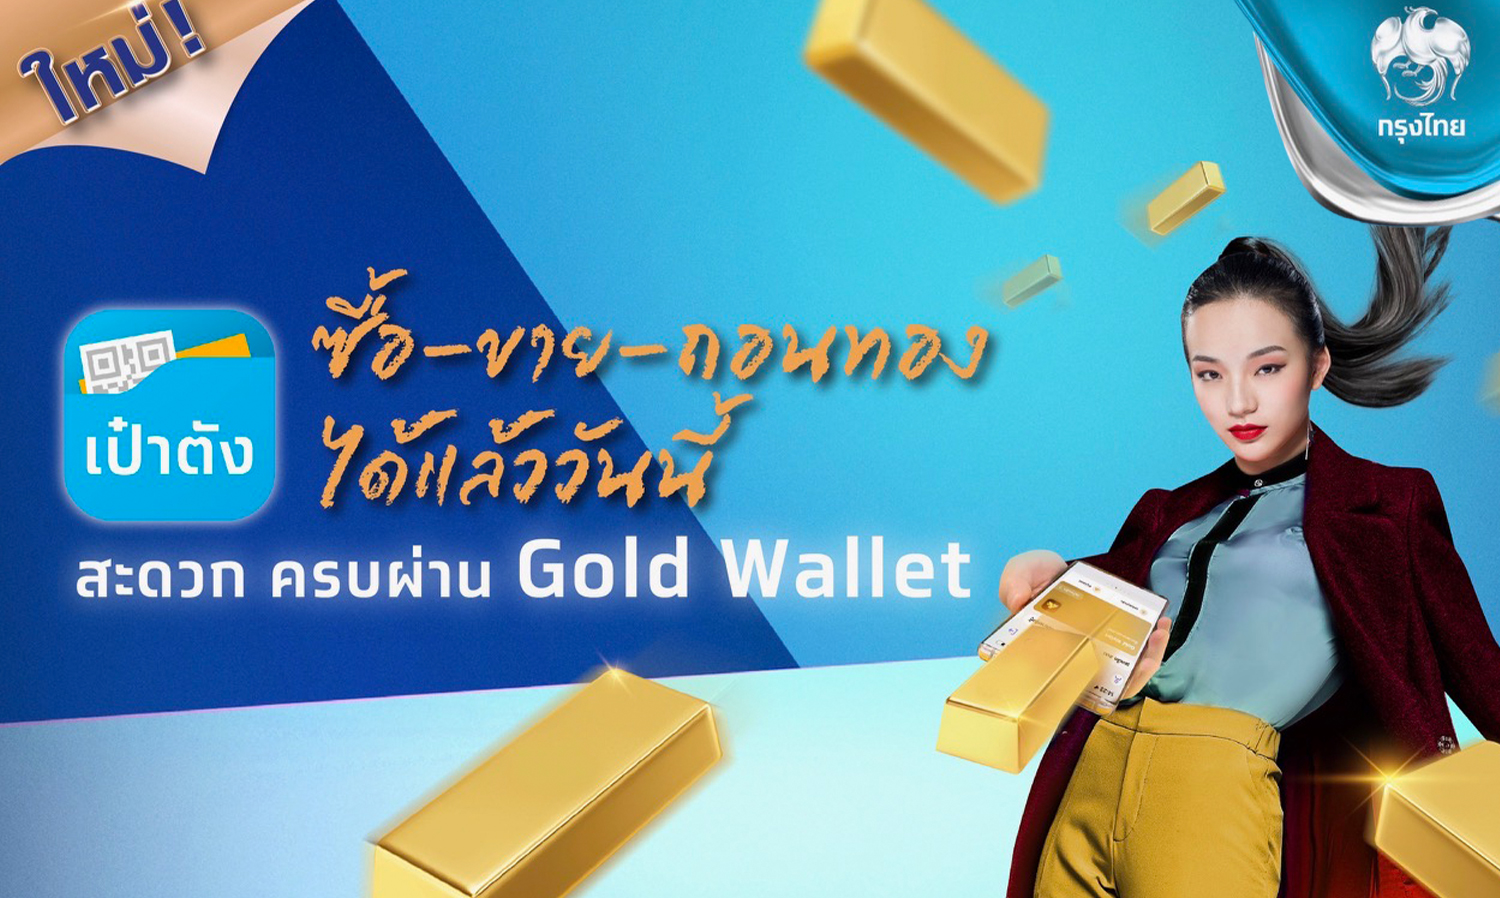 “กรุงไทย”-ตอกย้ำผู้นำ-gold-wallet-เปิด-“ถอนทองออนไลน์”-หนุนลงทุนทอง-ซื้อ-ขาย-ถอน-ครบจบในแอปฯเดียวผ่าน-“เป๋าตัง”